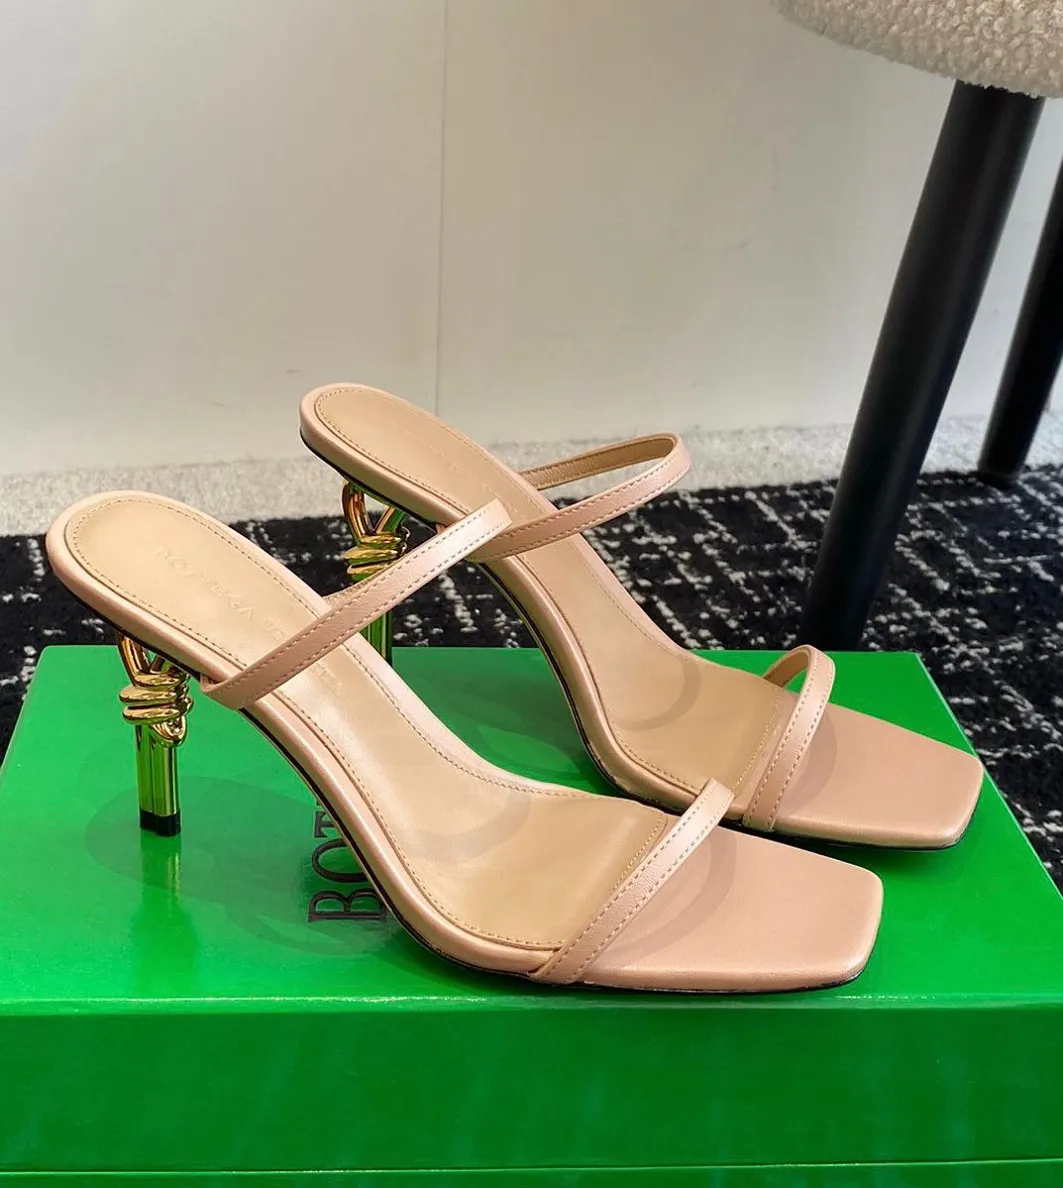 Summerskie kobiety luksusowe sandały nękowe buty cielę skórzane muły nagi złoto srebrny biały czarny czarny stóp do palców wysokie obcasy seksowne dama spacery EU35-43